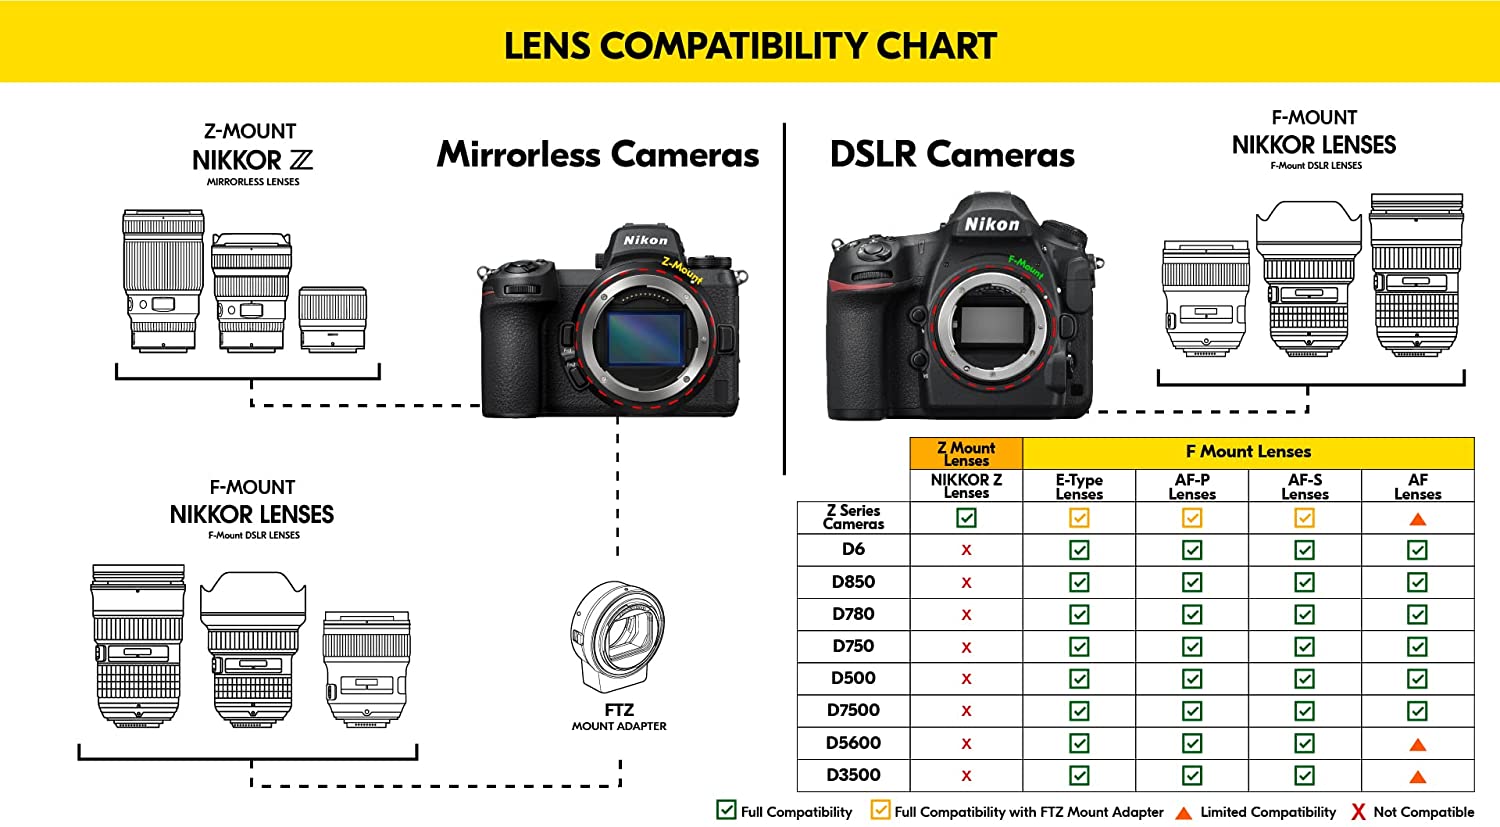 Nikon AF-S VR Micro-105mm f/2.8G IF-ED Lens (2160) Intl Model Bundle